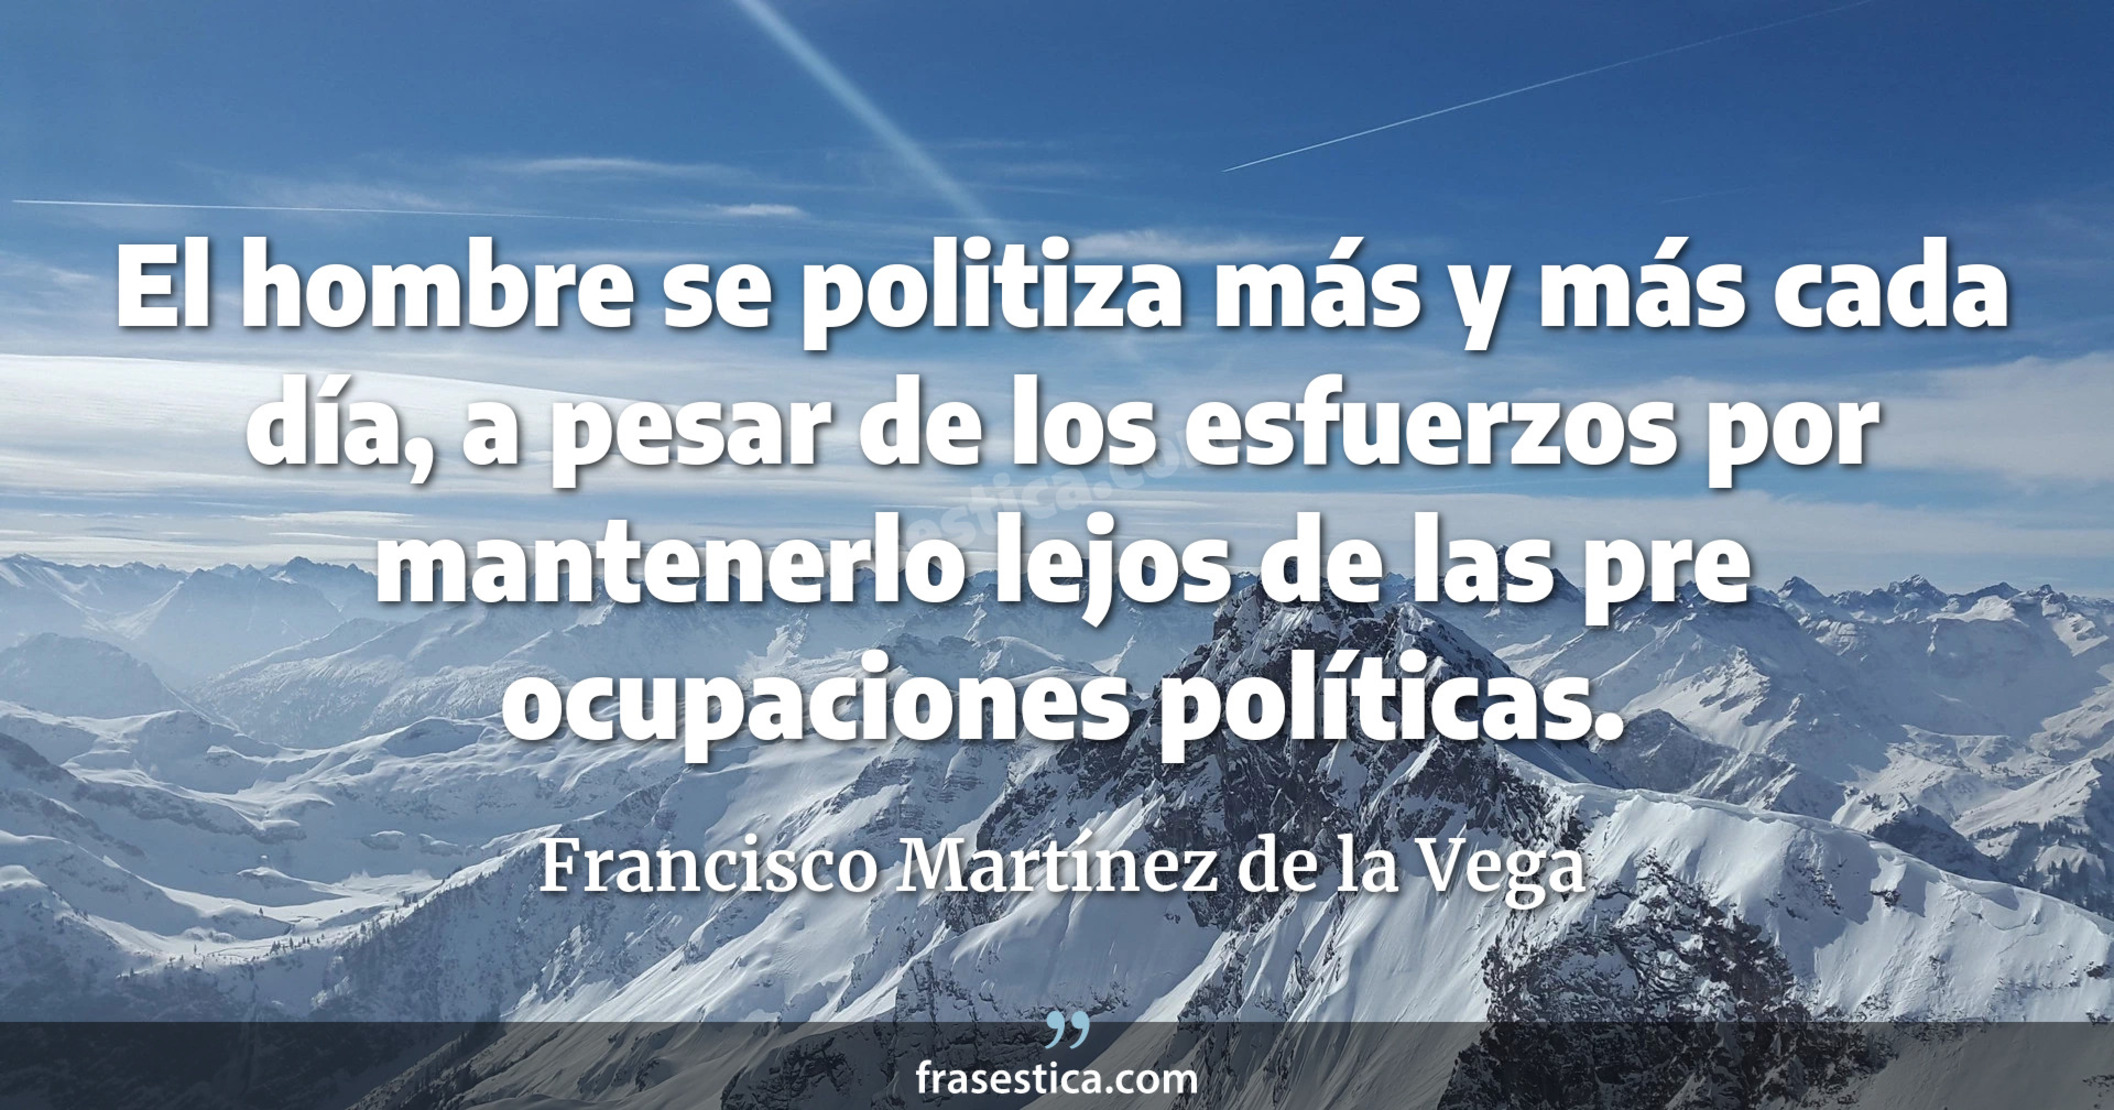 El hombre se politiza más y más cada día, a pesar de los esfuerzos por mantenerlo lejos de las pre ocupaciones políticas. - Francisco Martínez de la Vega